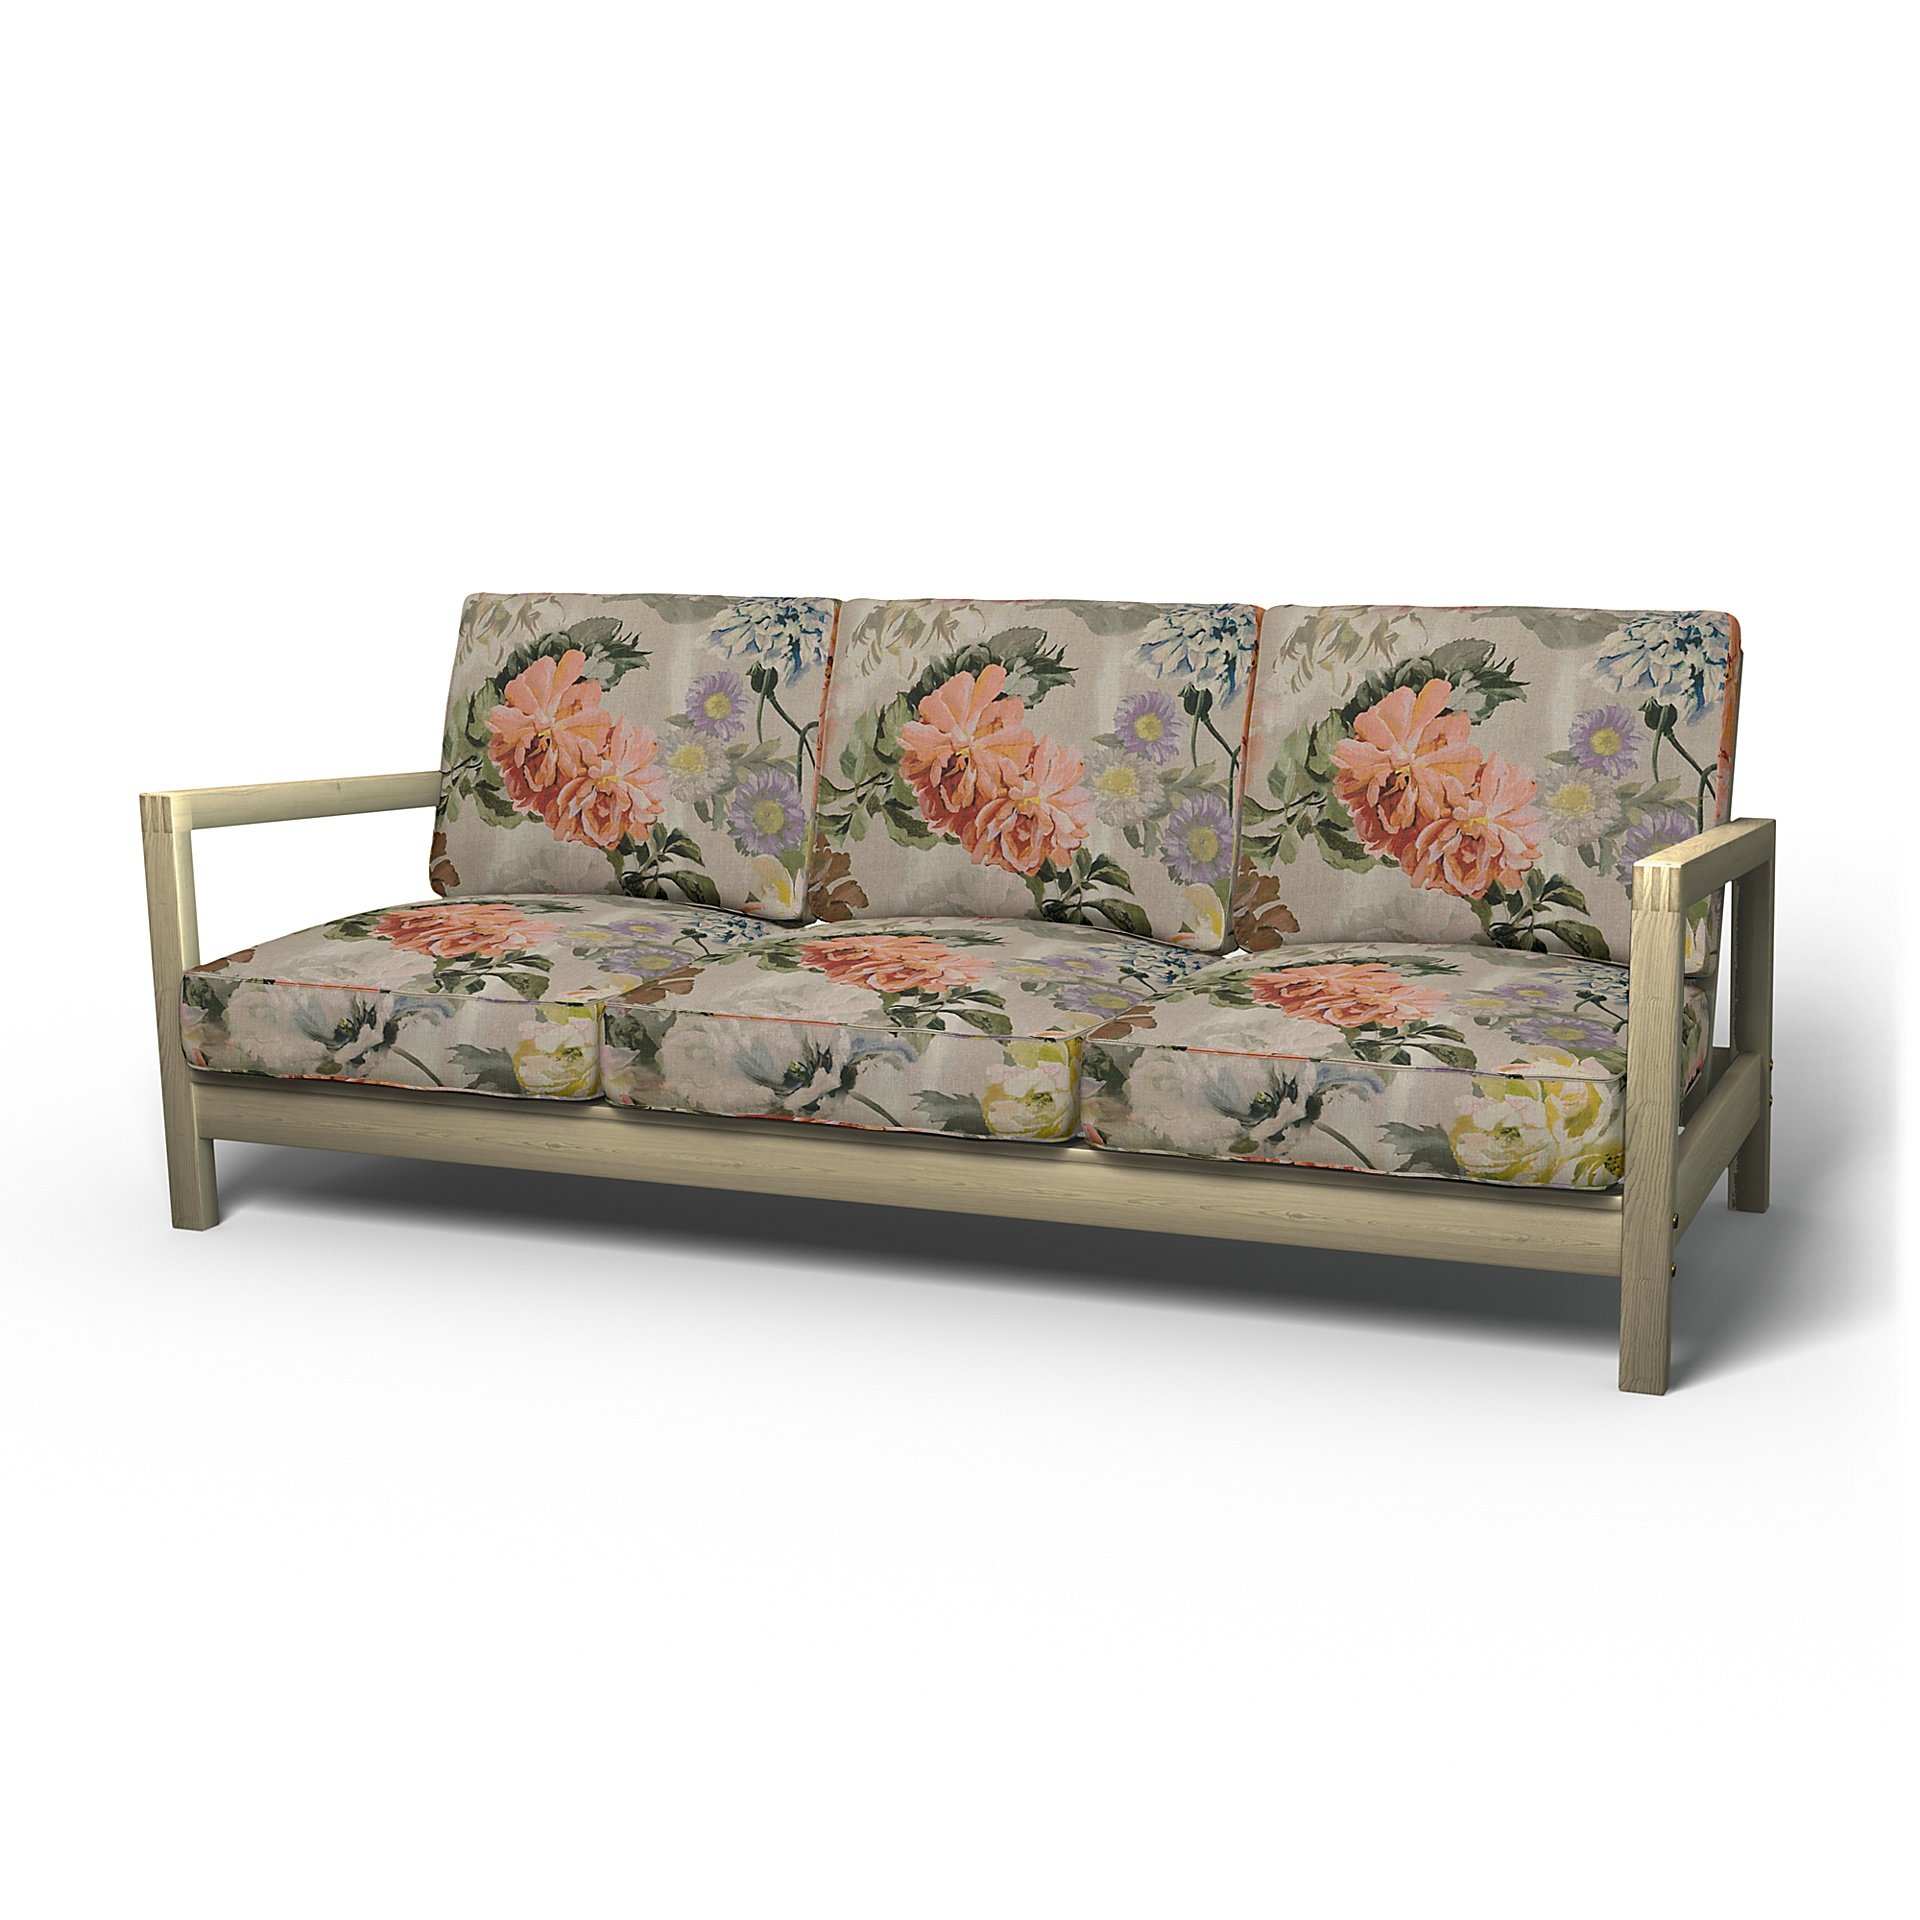 IKEA - Lillberg 3 Seater Sofa Cover, Delft Flower - Tuberose, Linen - Bemz